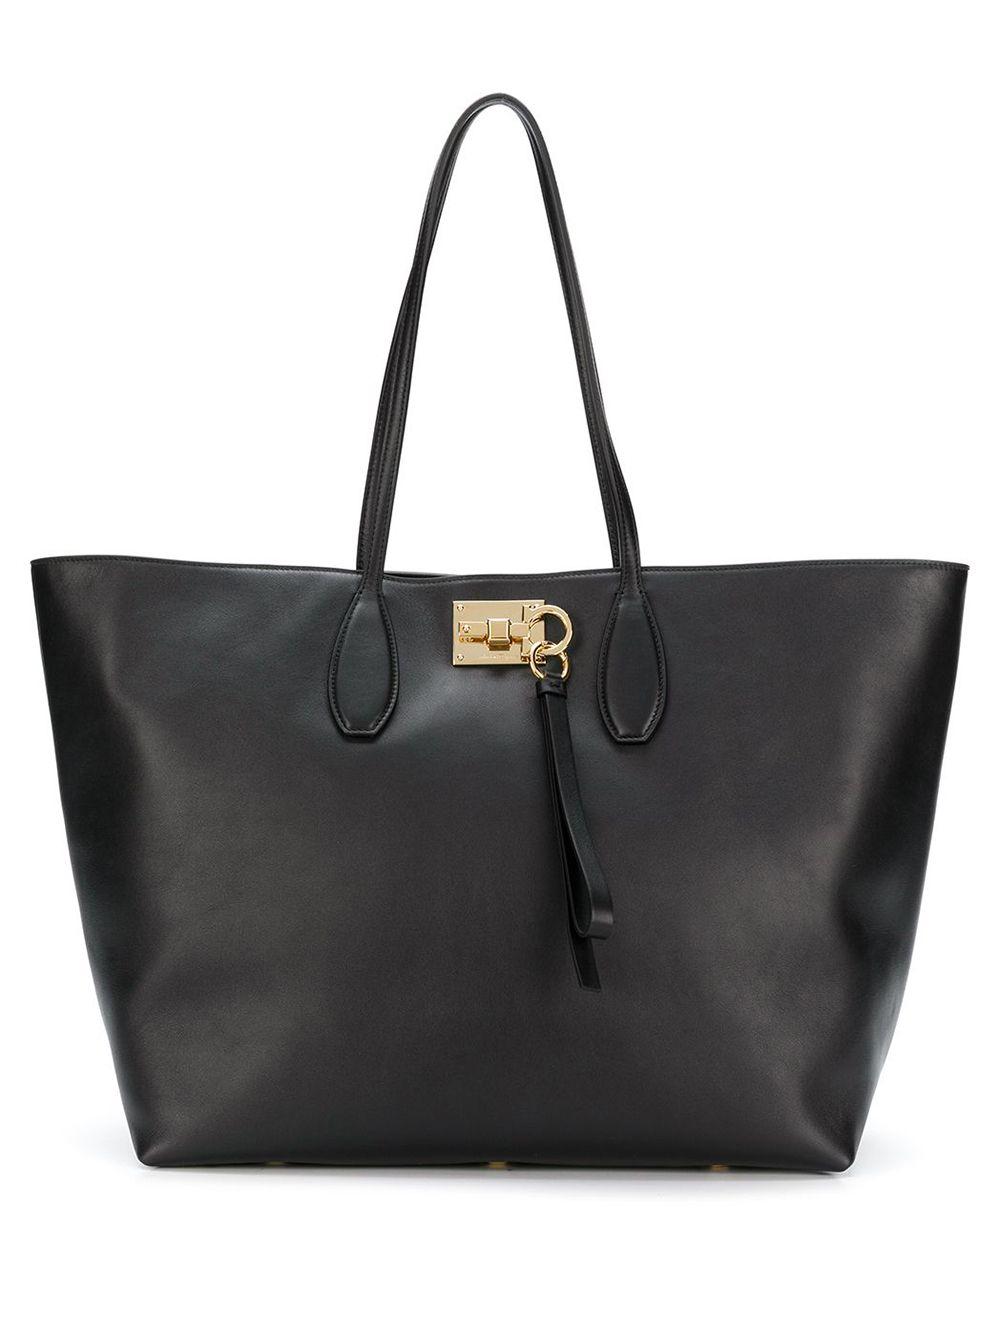 Ferragamo Leather Ferragamo Studio Tote Bag in Black (Brown) - Save 44% ...